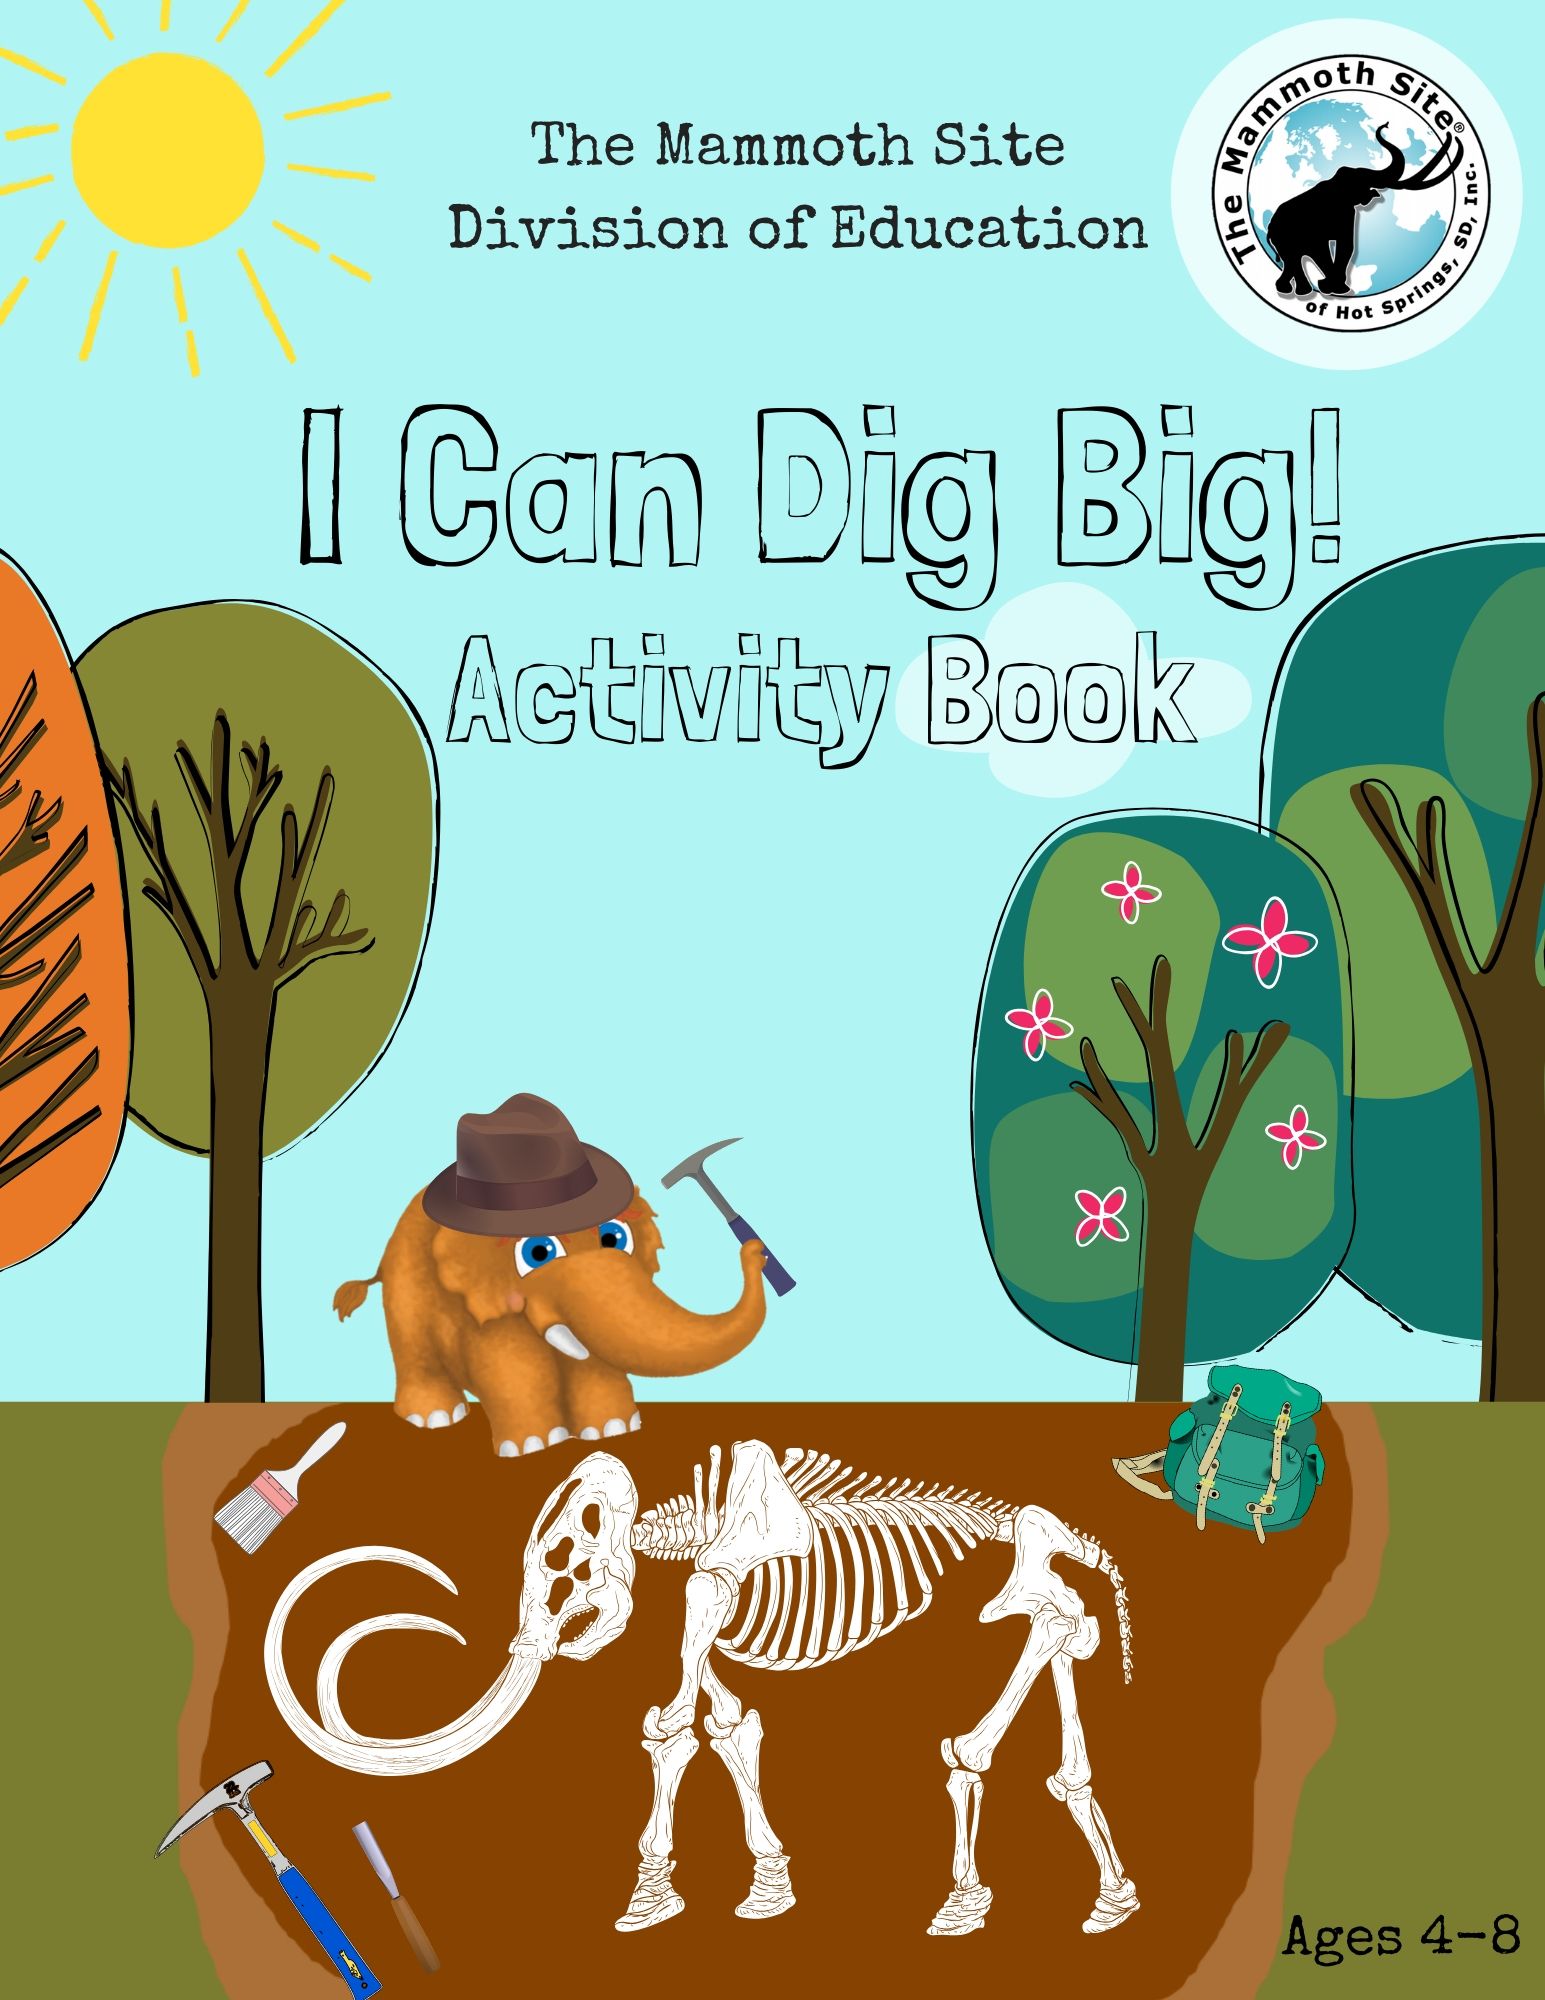 I Can Dig Big Activity Book